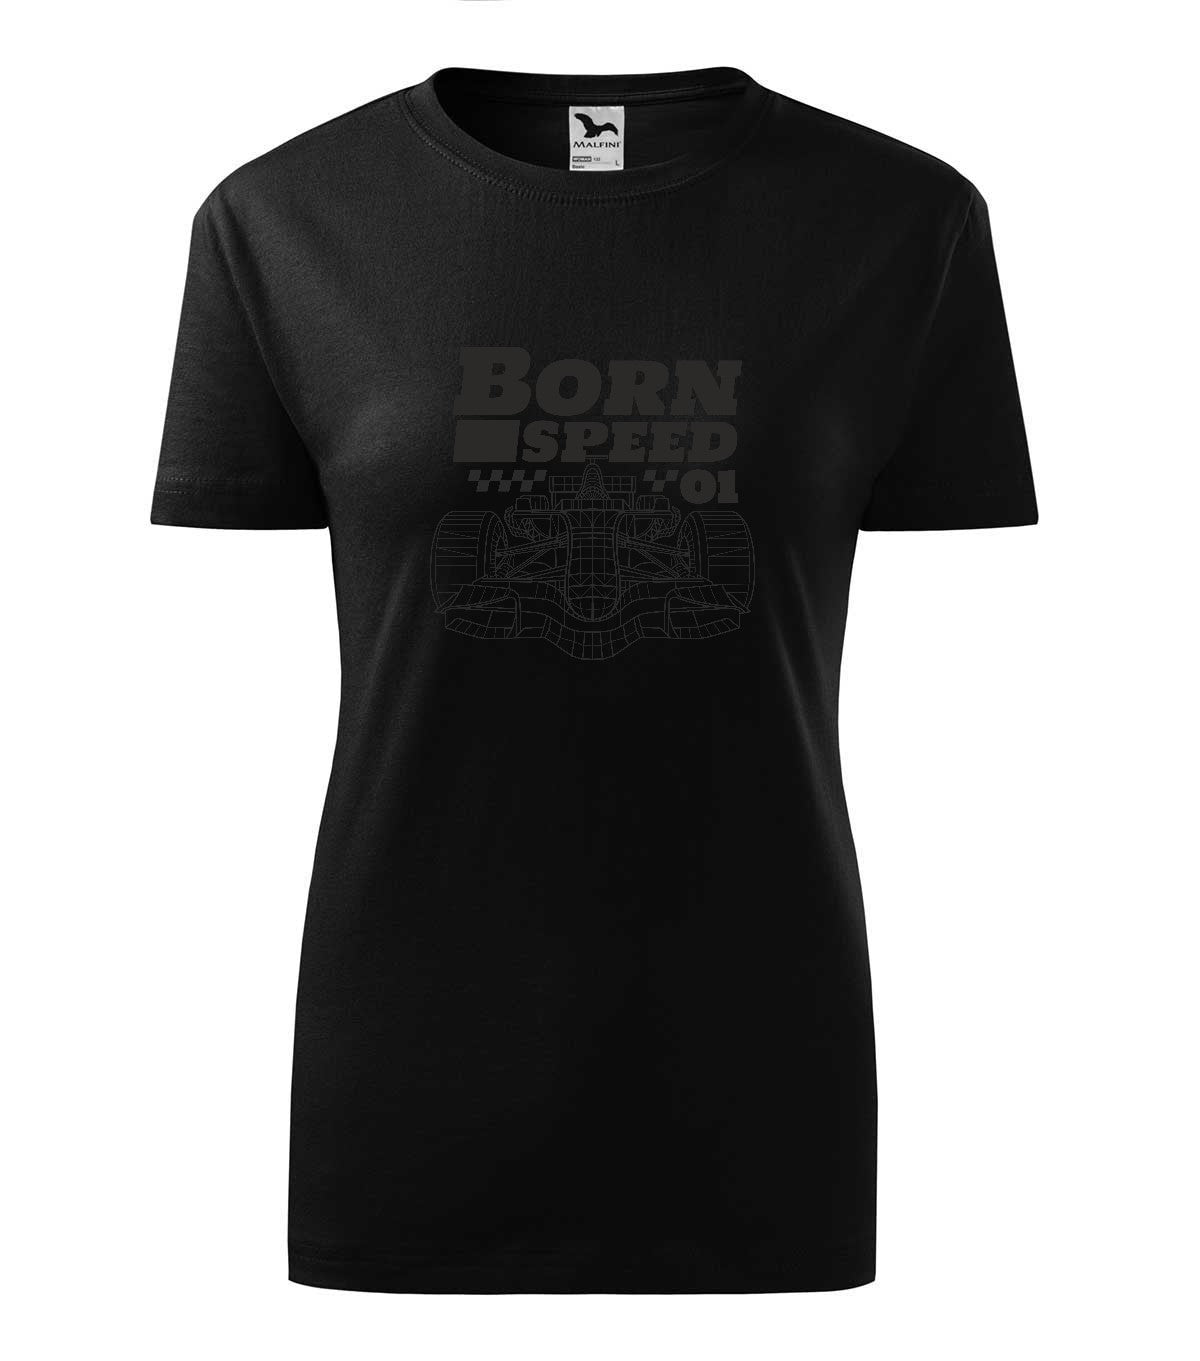 Born to Speed női póló